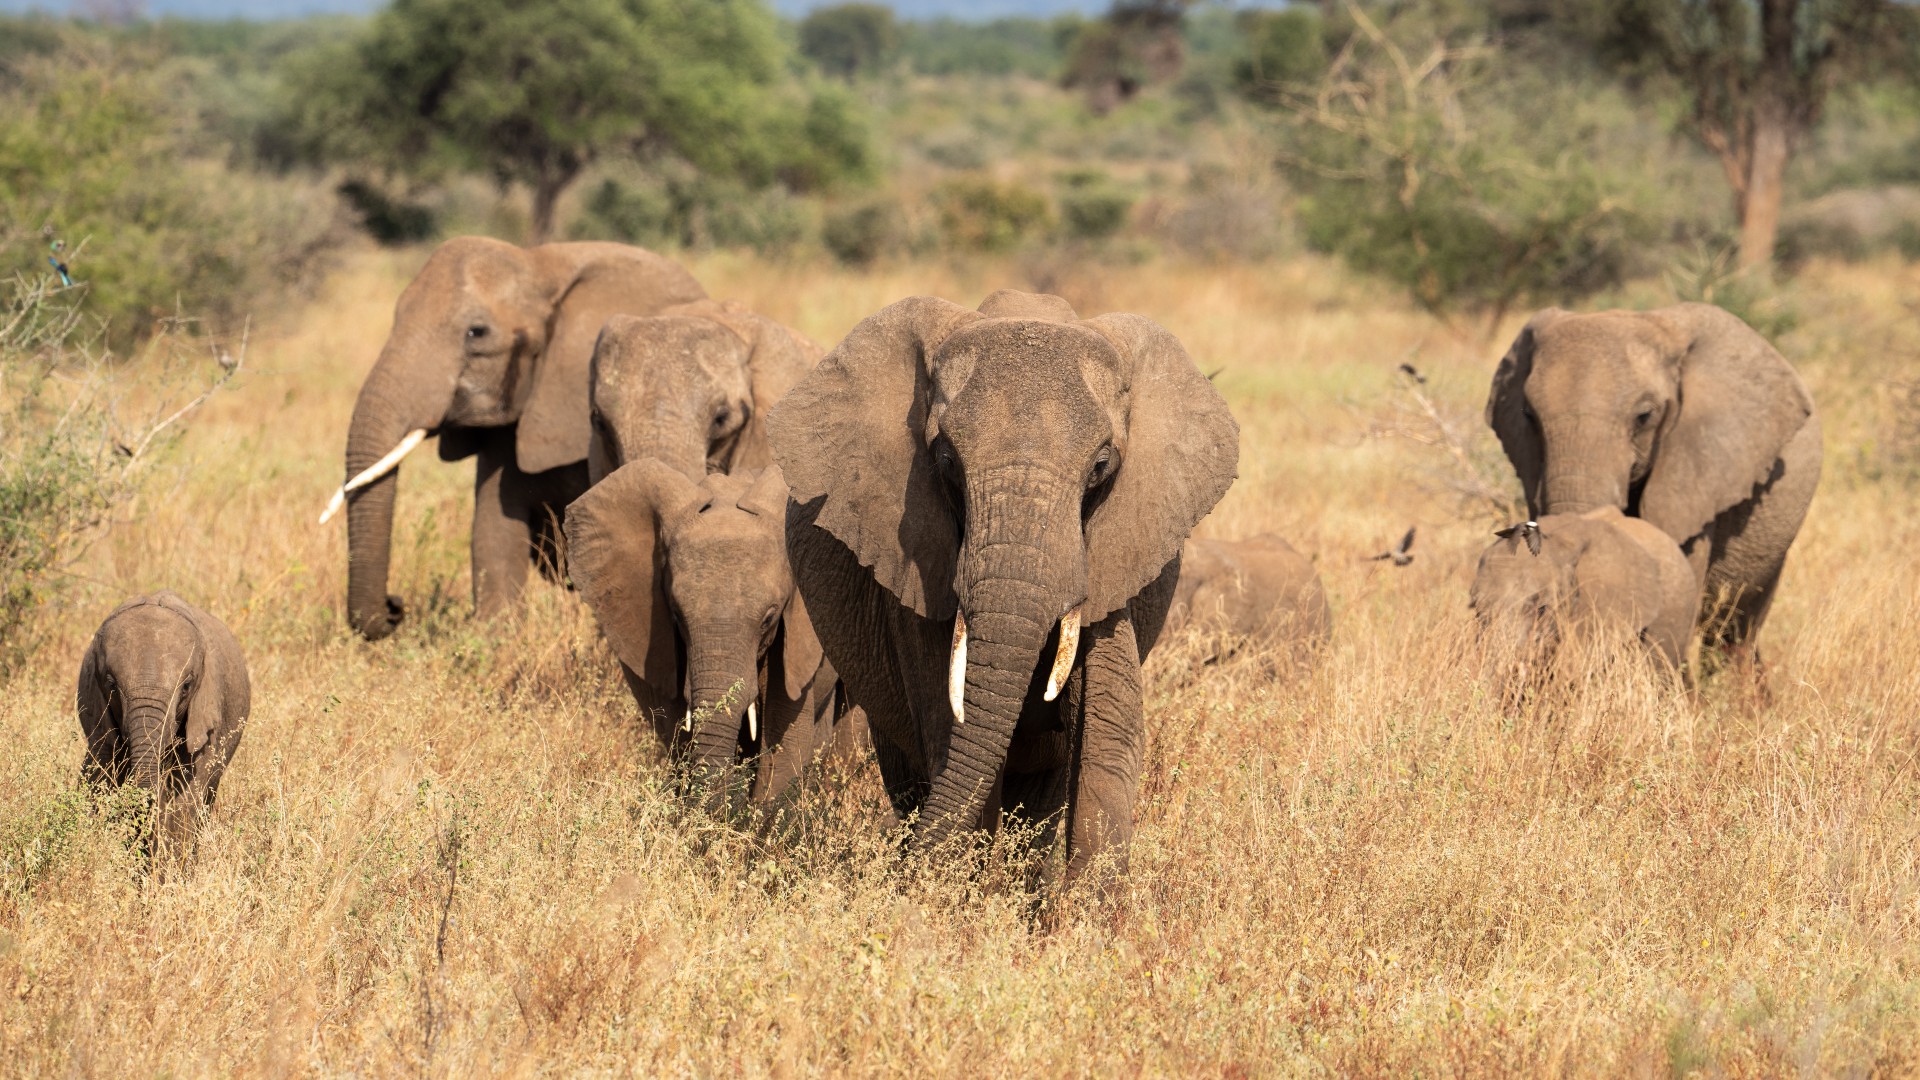 A herd of wild elephants walking through long grass